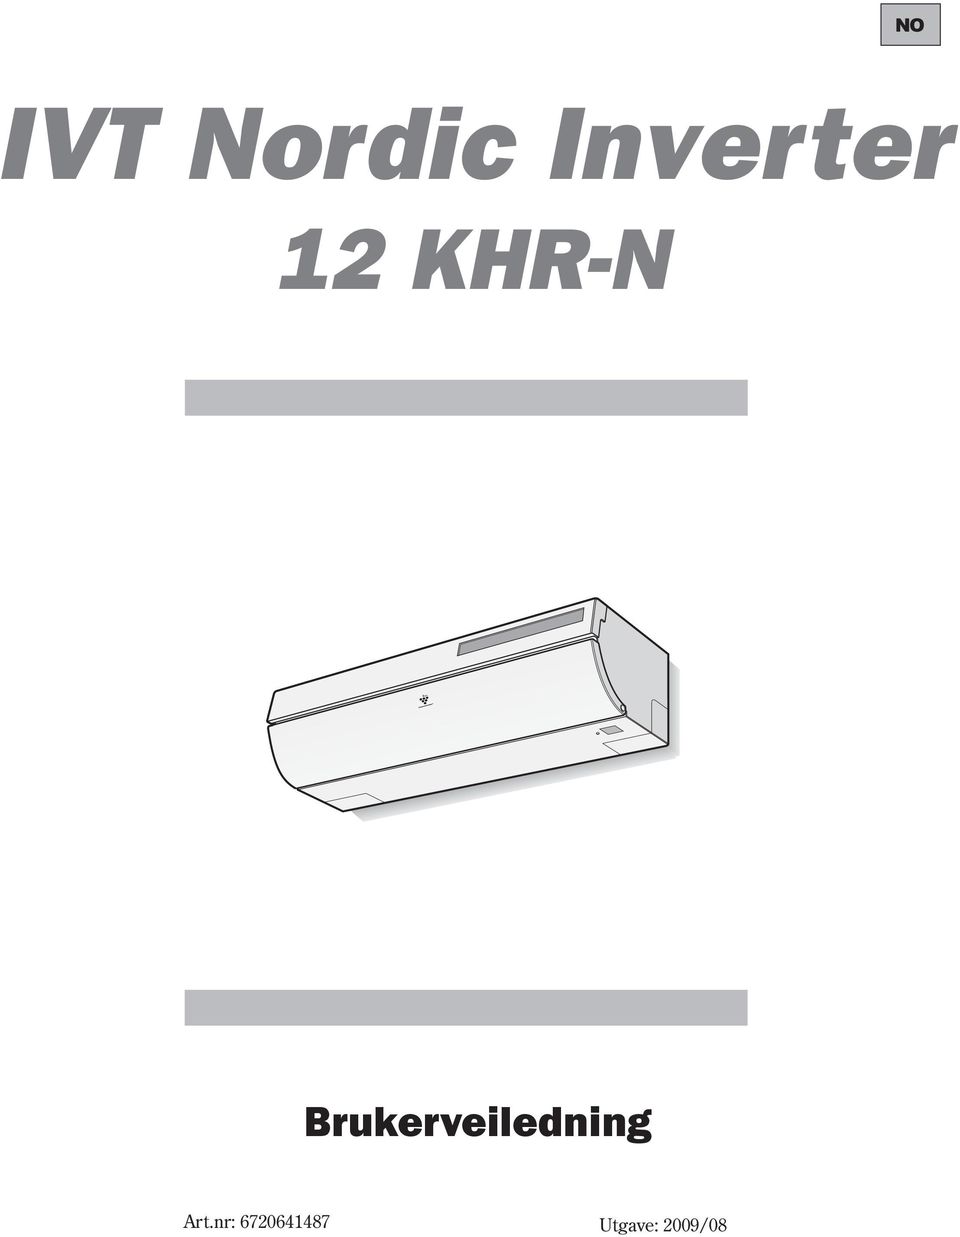 Ivt nordic inverter 12 khr n feilkoder